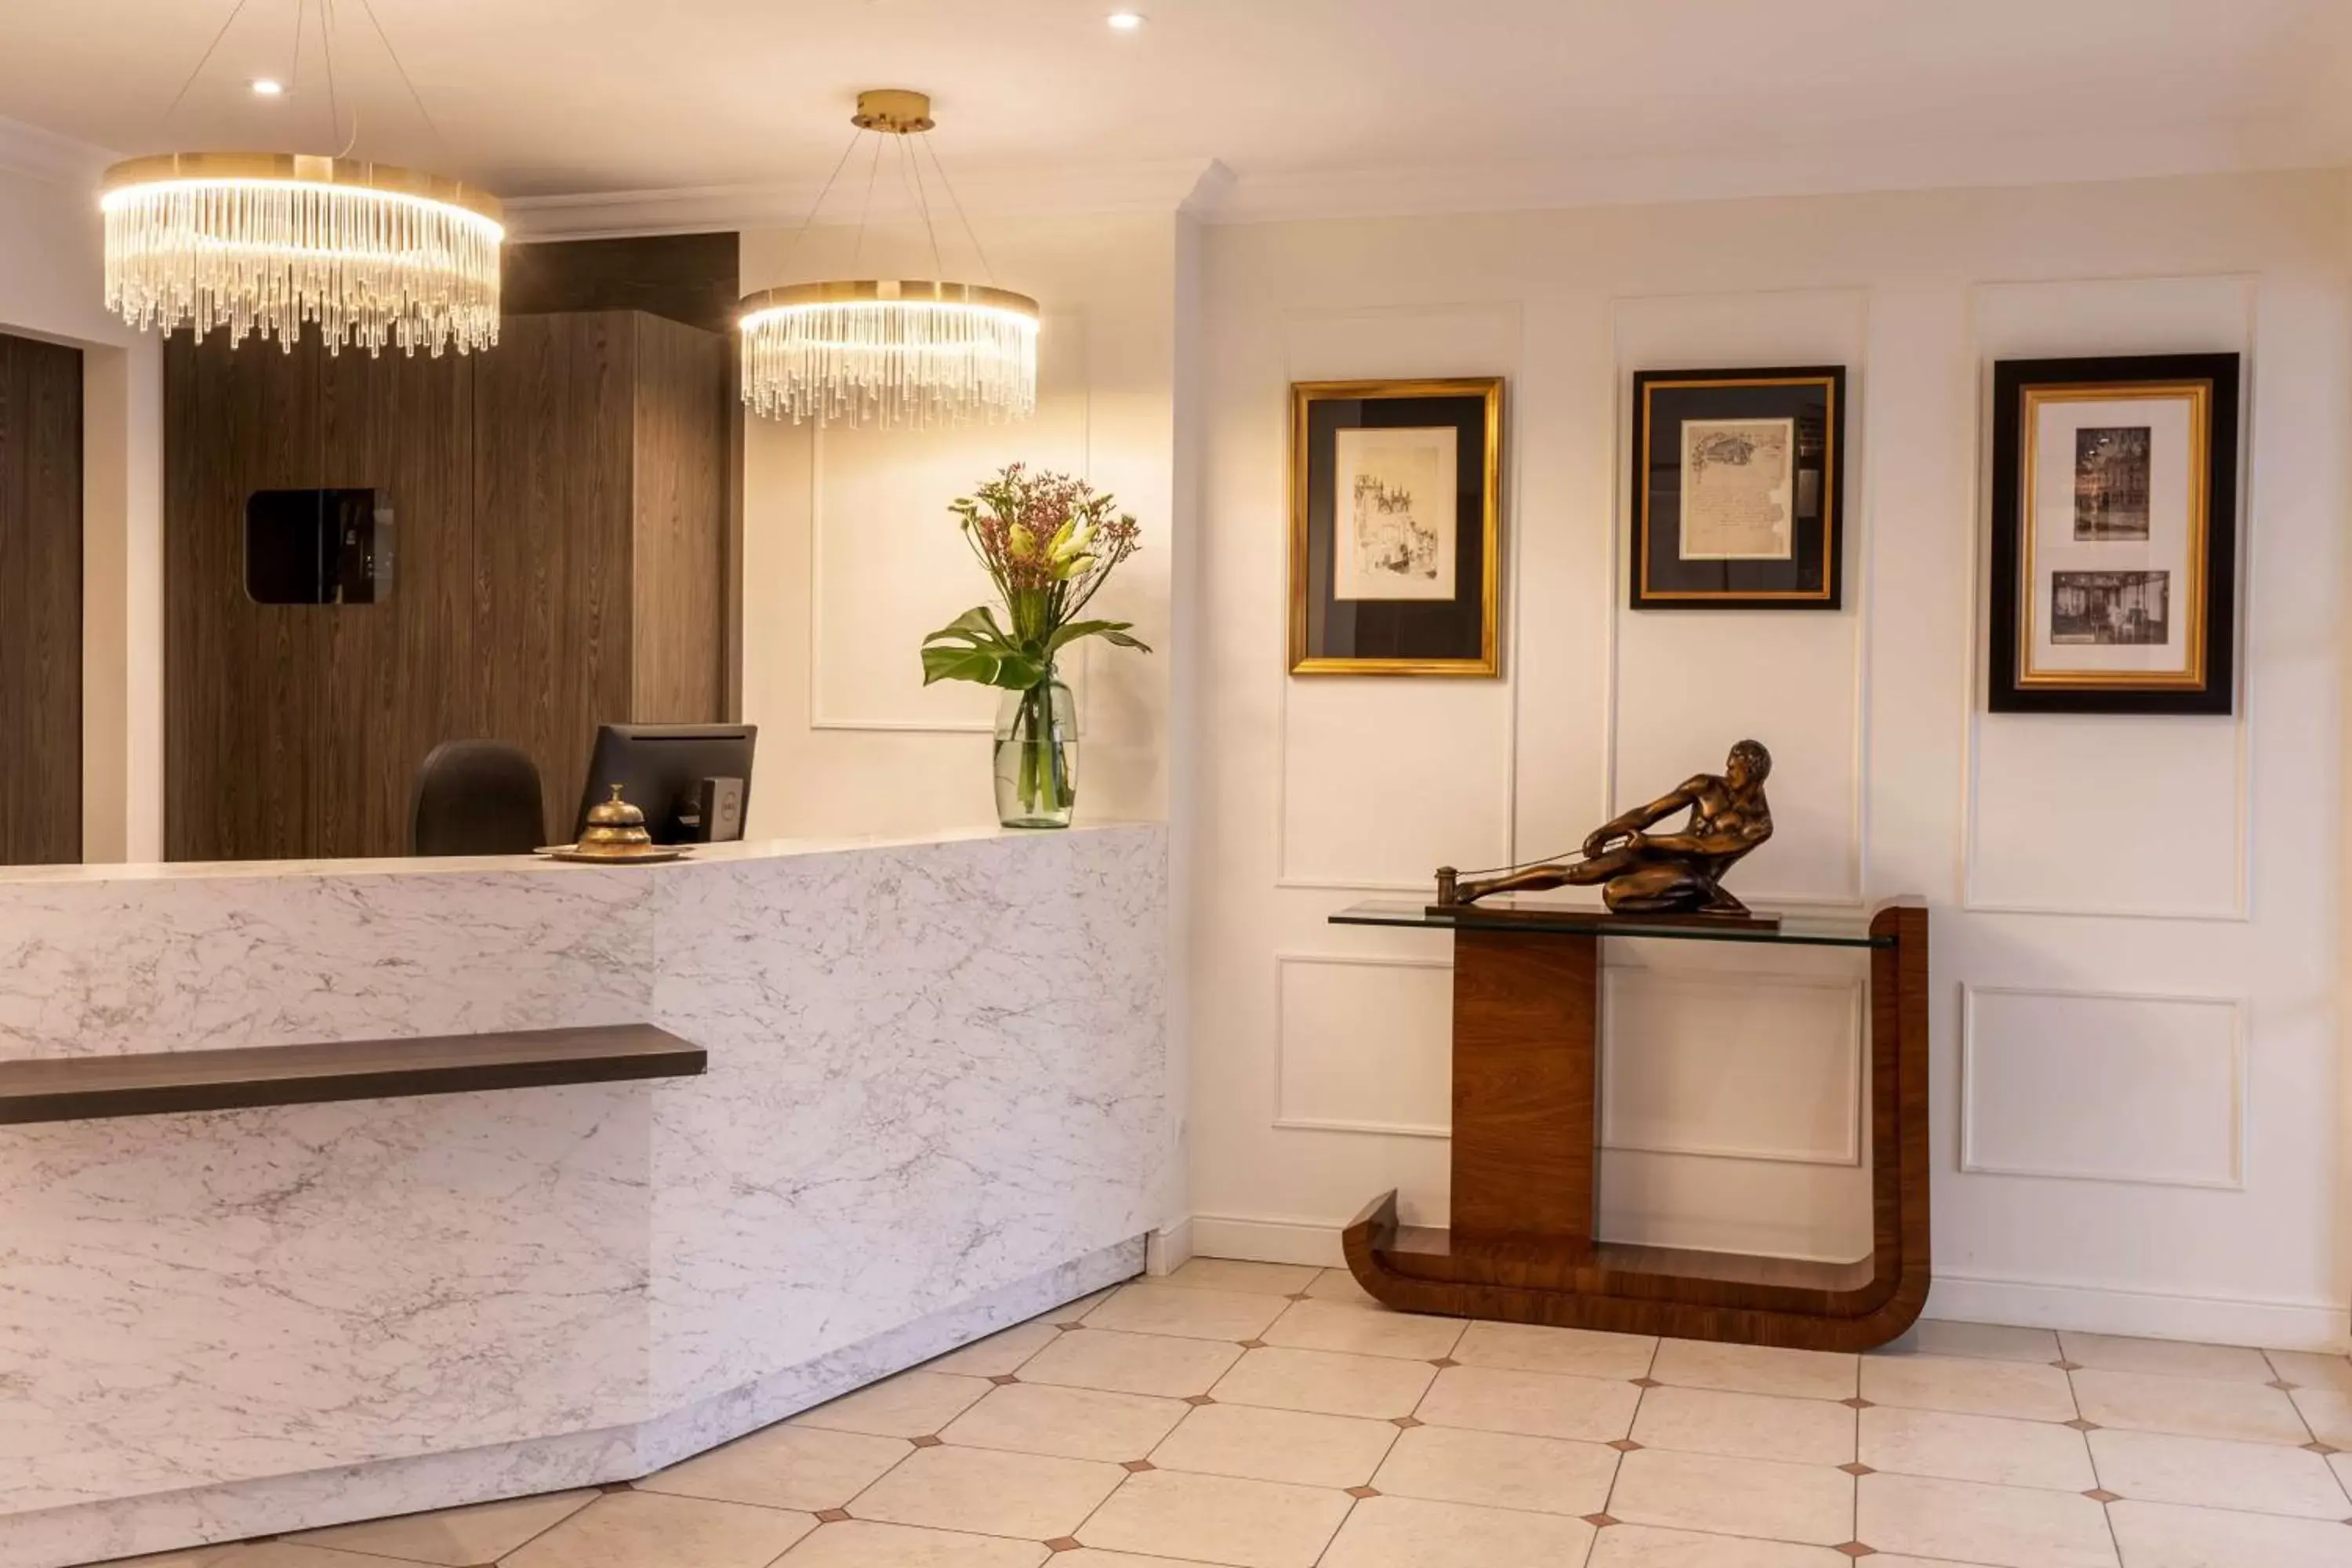 Lobby or reception, Lobby/Reception in Best Western Royal Hotel Caen